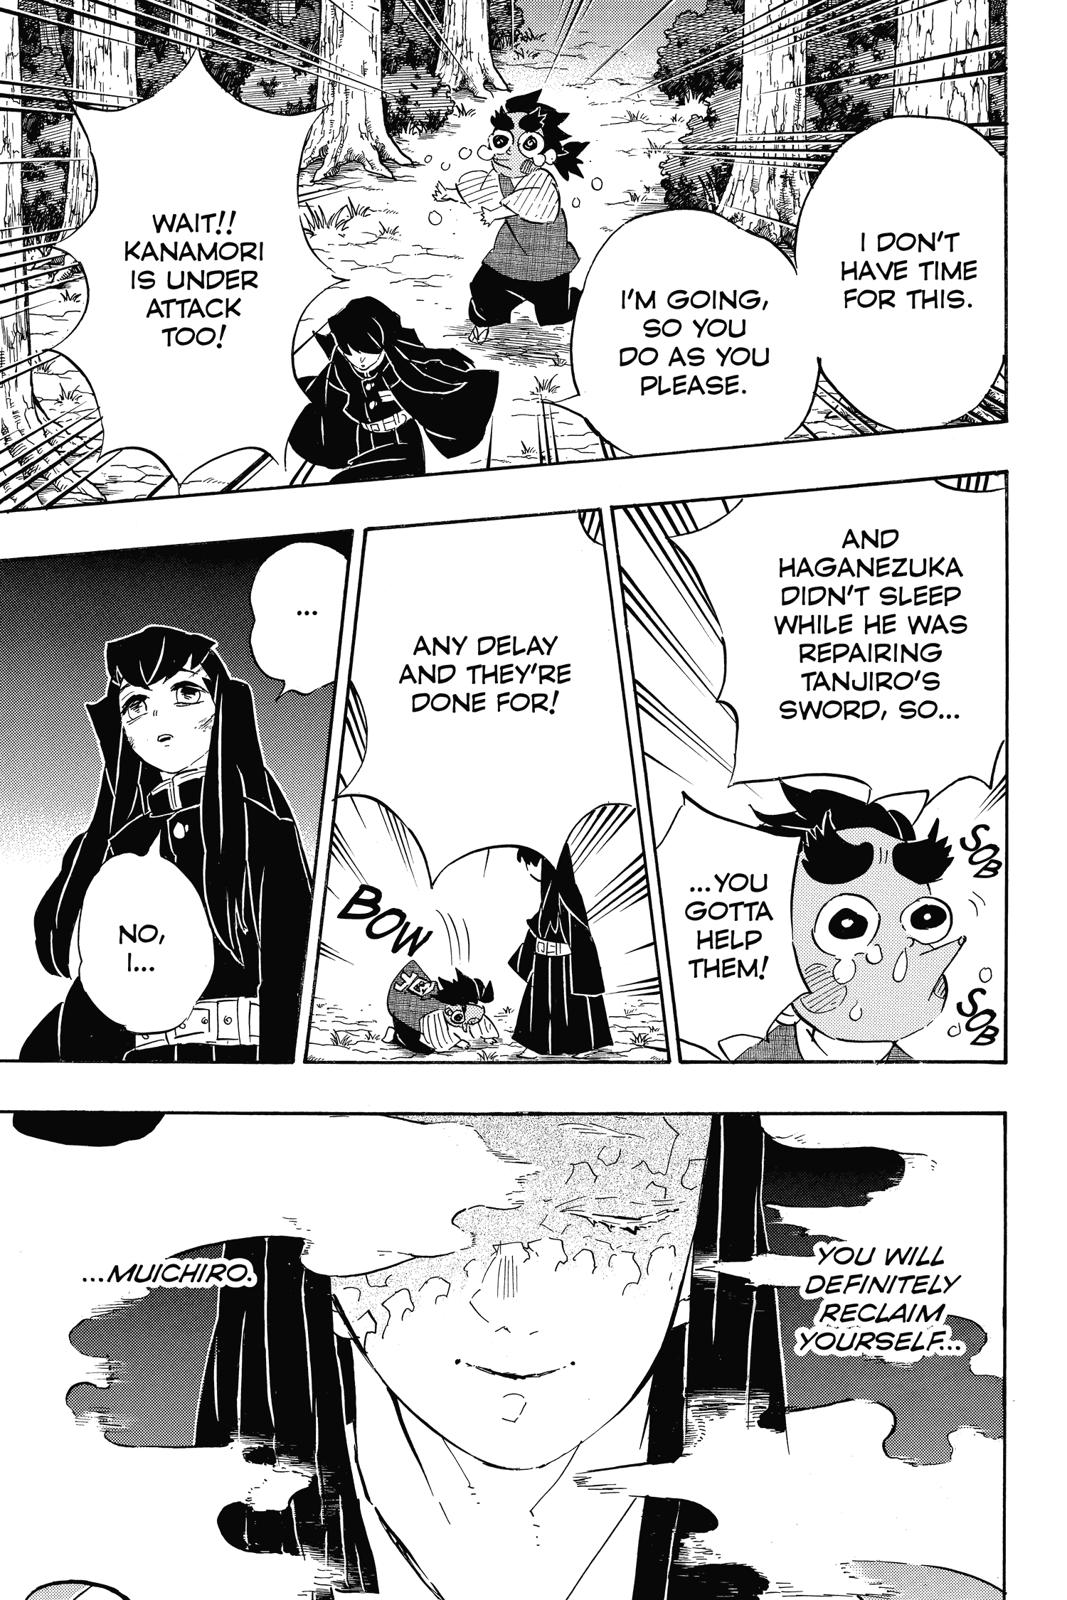 Demon Slayer Manga Manga Chapter - 108 - image 3